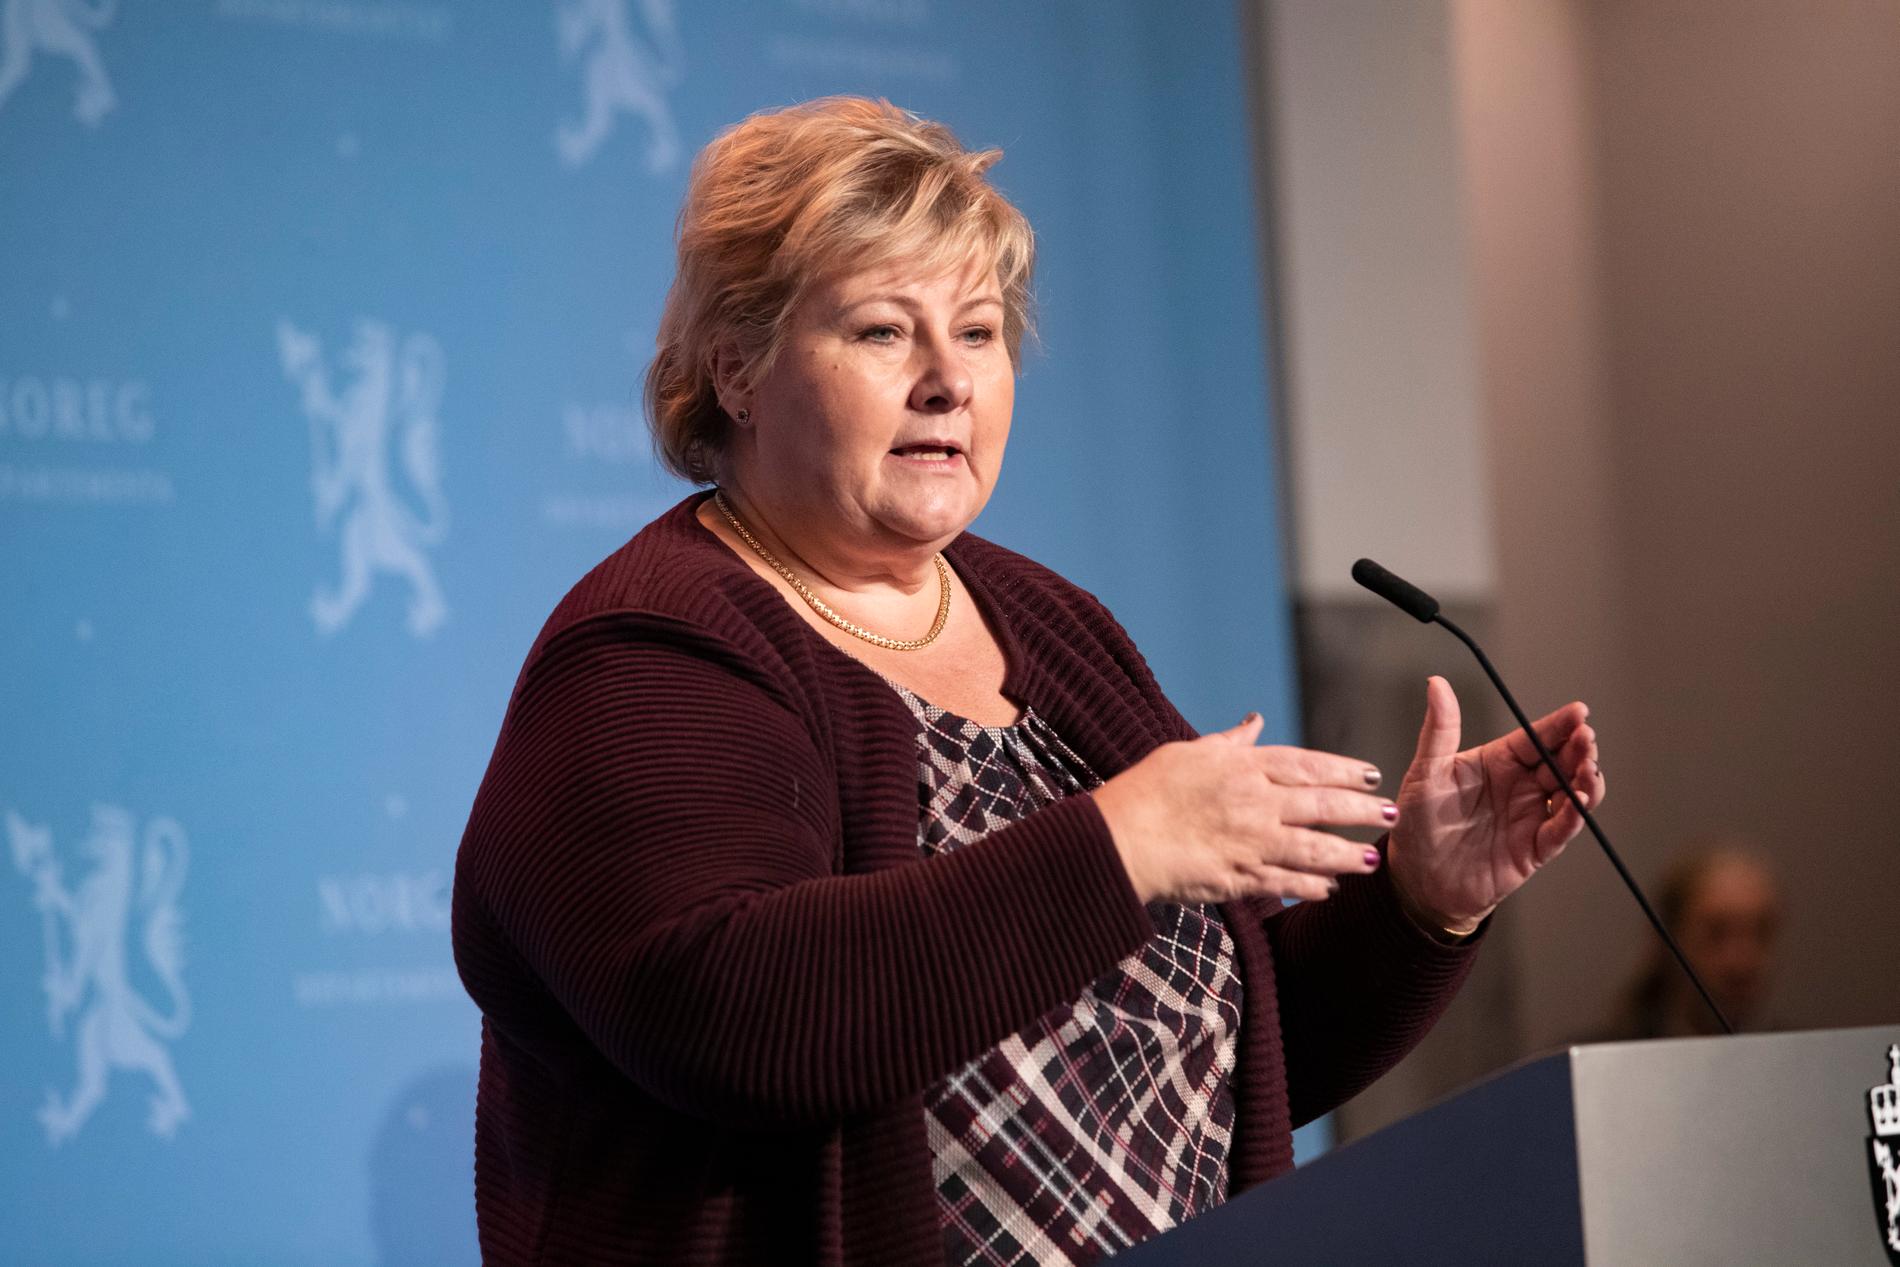 Statsminister Erna Solberg under presskonferensen där restriktionerna meddelades.